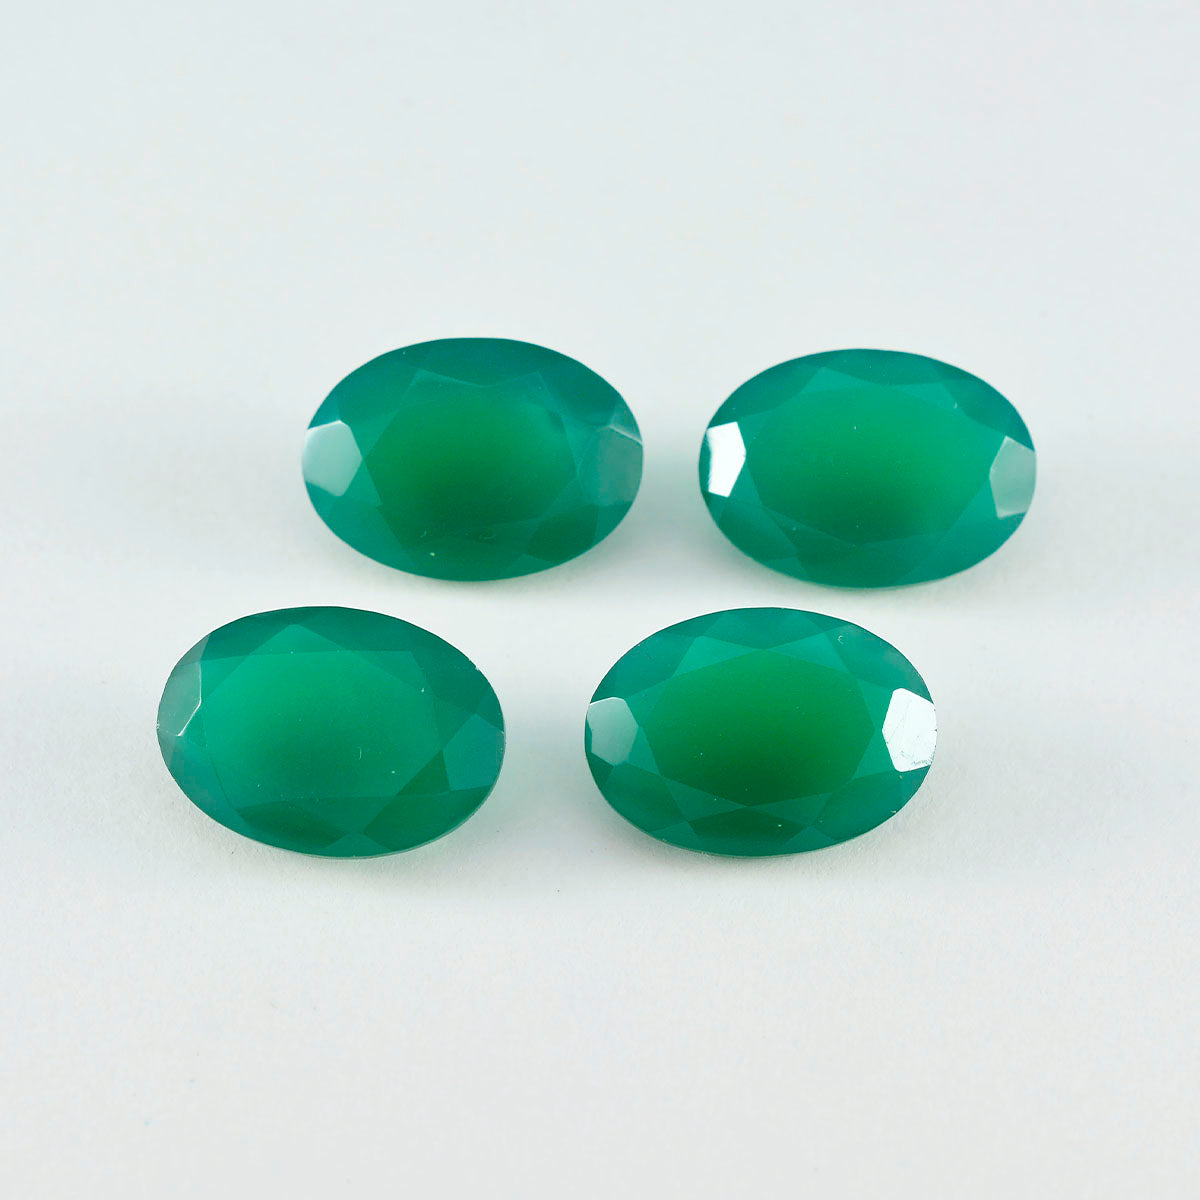 Riyogems 1 Stück echter grüner Onyx, facettiert, 9 x 11 mm, ovale Form, fantastischer Qualitätsstein